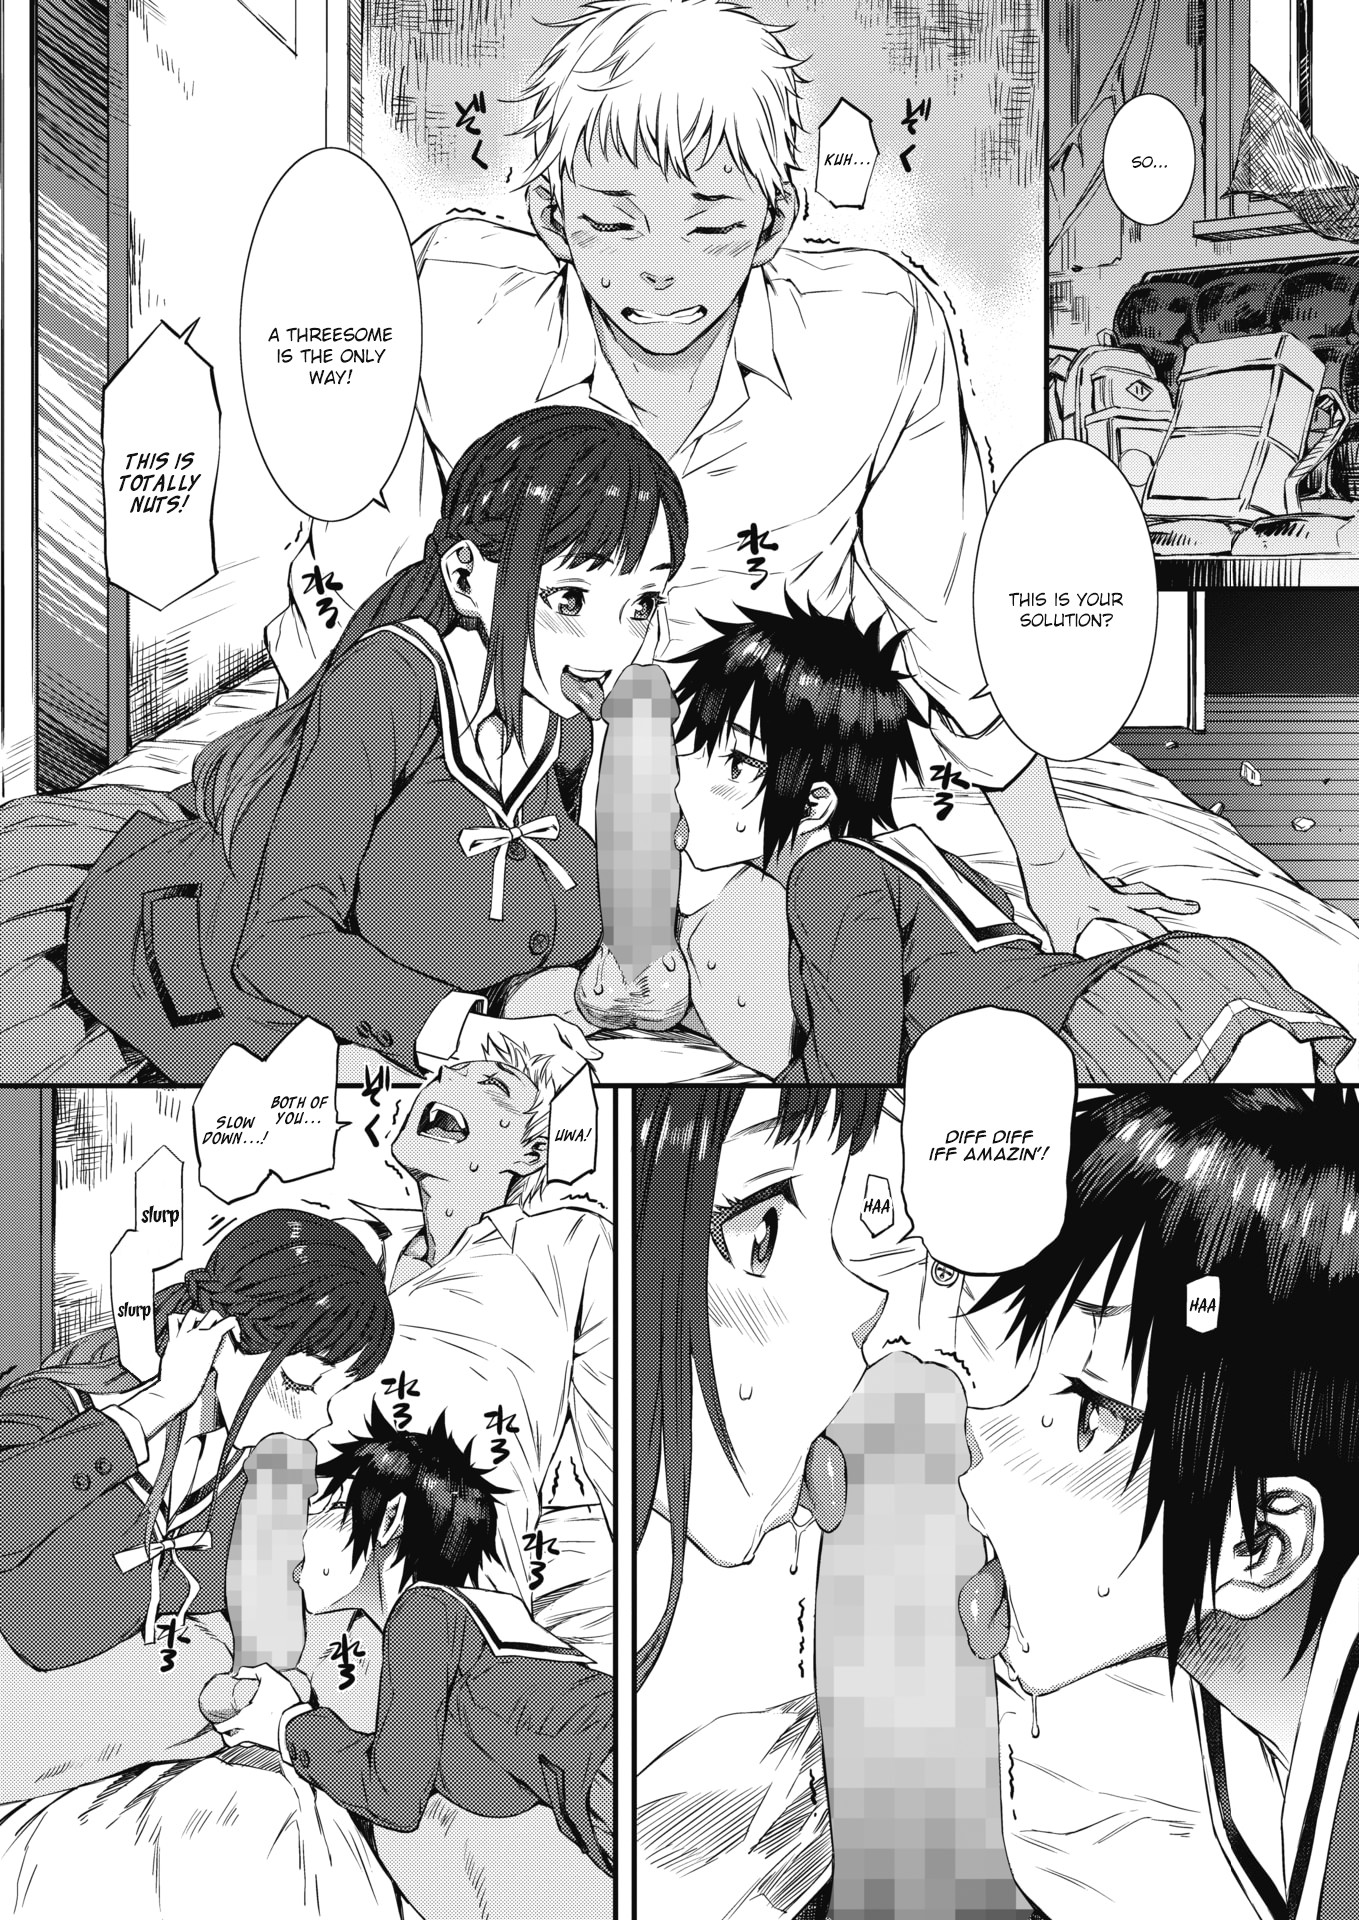 Threesome hentai manga